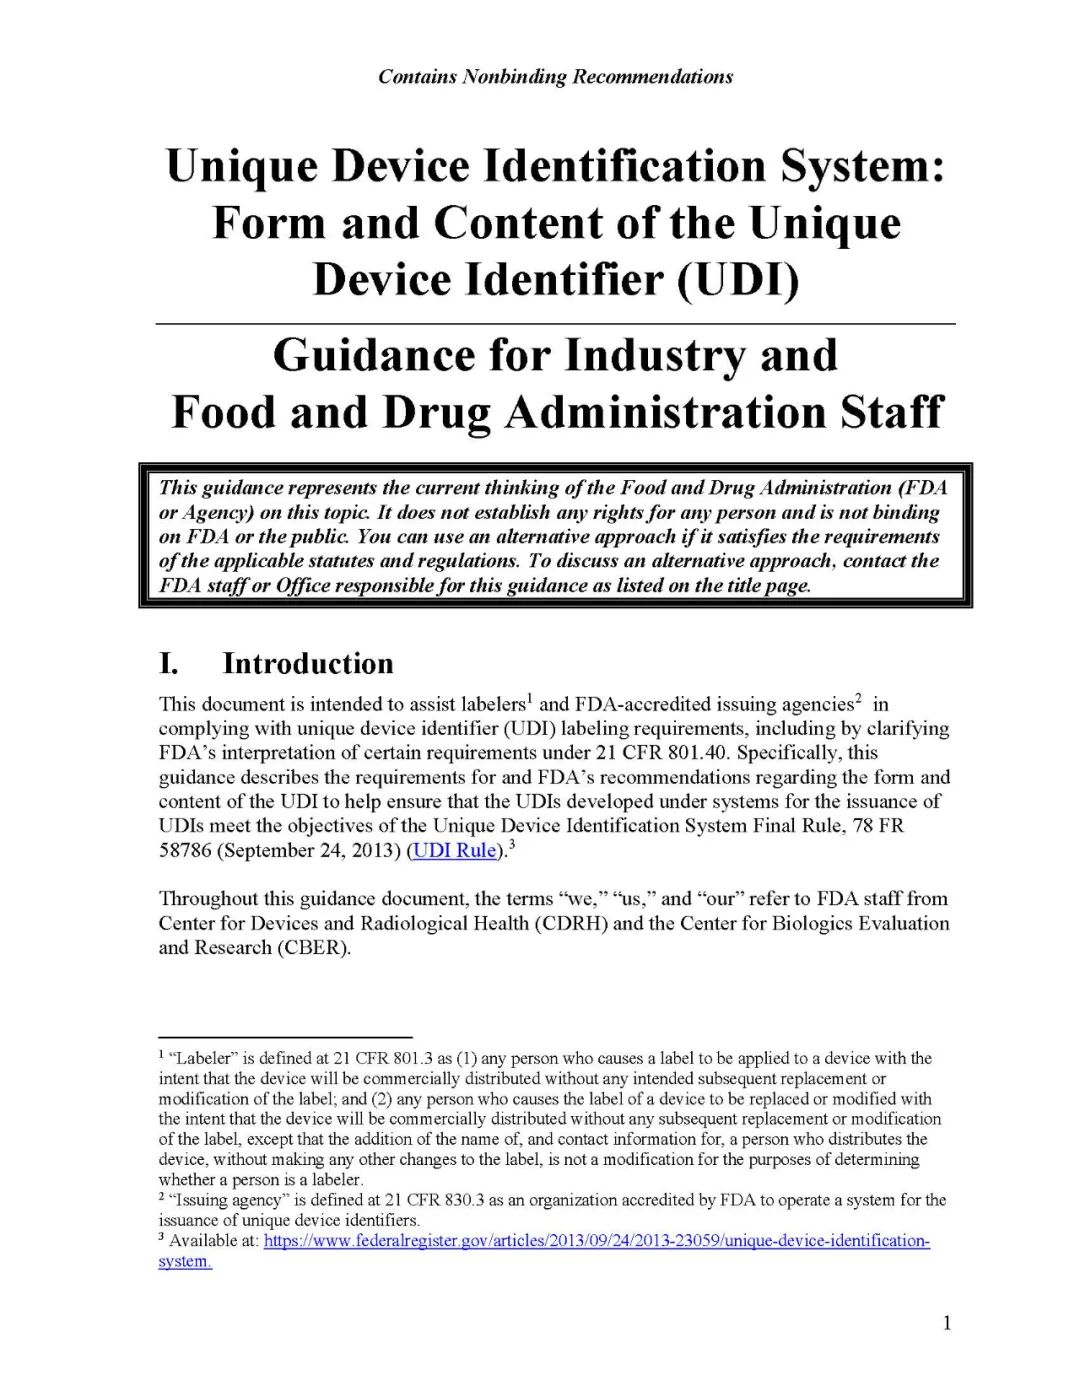 美国FDA UDI格式和内容指南4